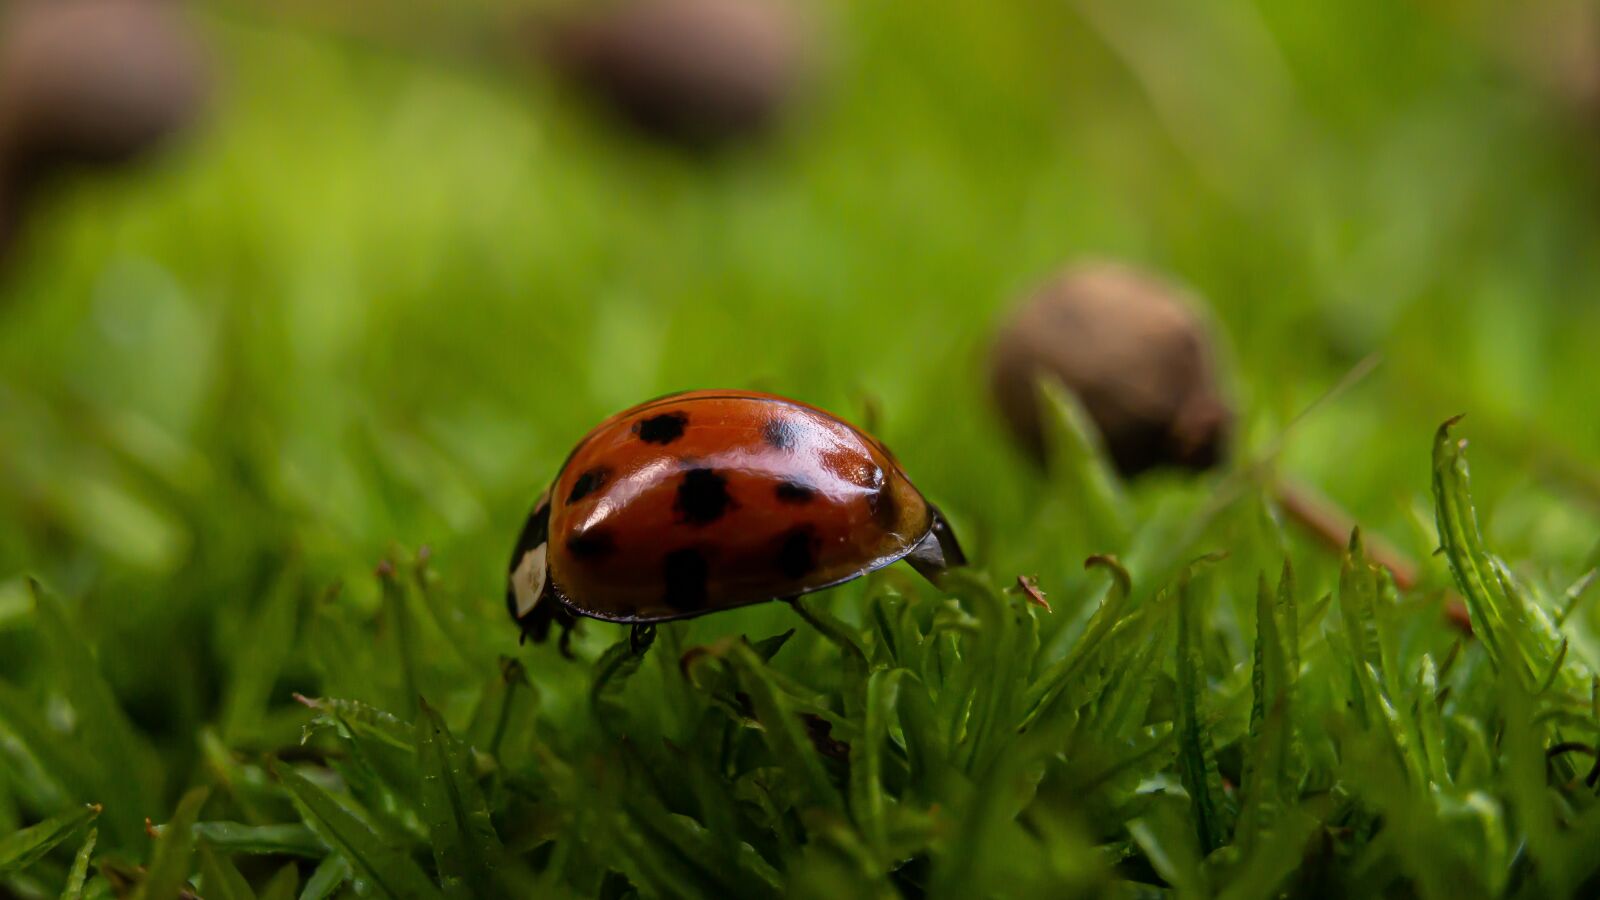 Olympus PEN E-PL6 sample photo. Ladybug, beetle, macro photography photography